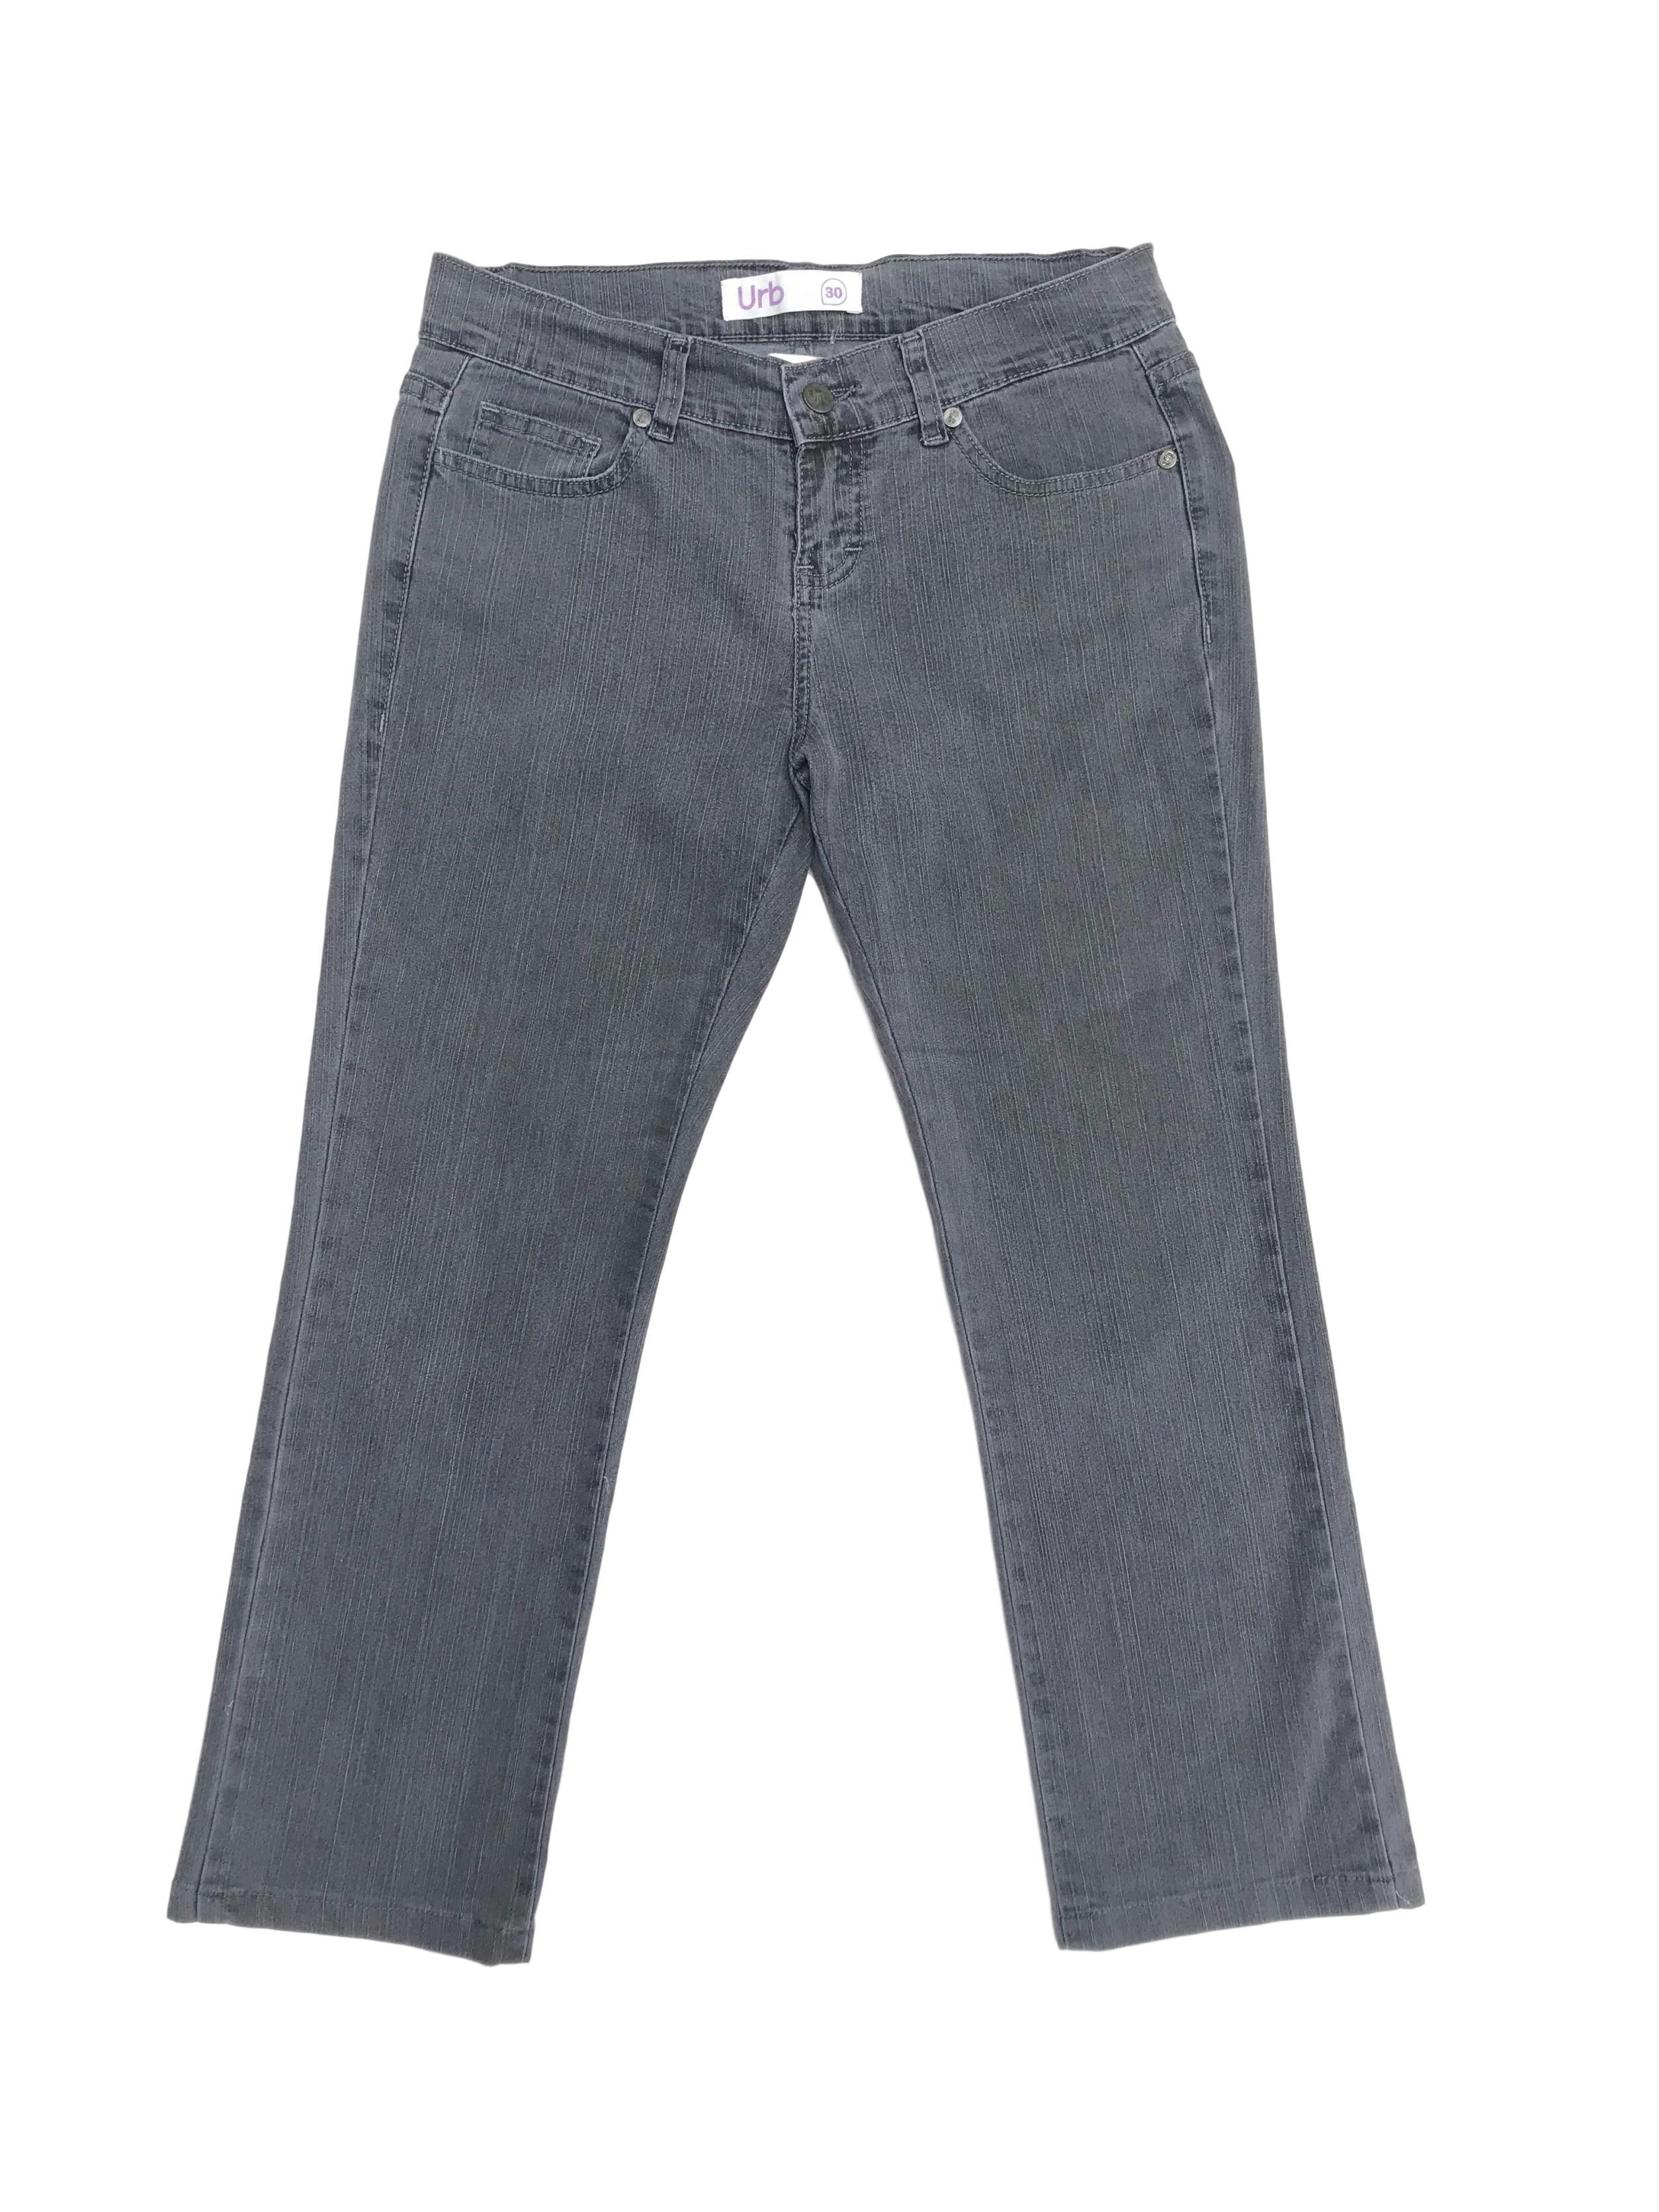 Pantalón jean plomo 100% algodón, corte recto al tobillo. Pretina 76cm Largo 85cm